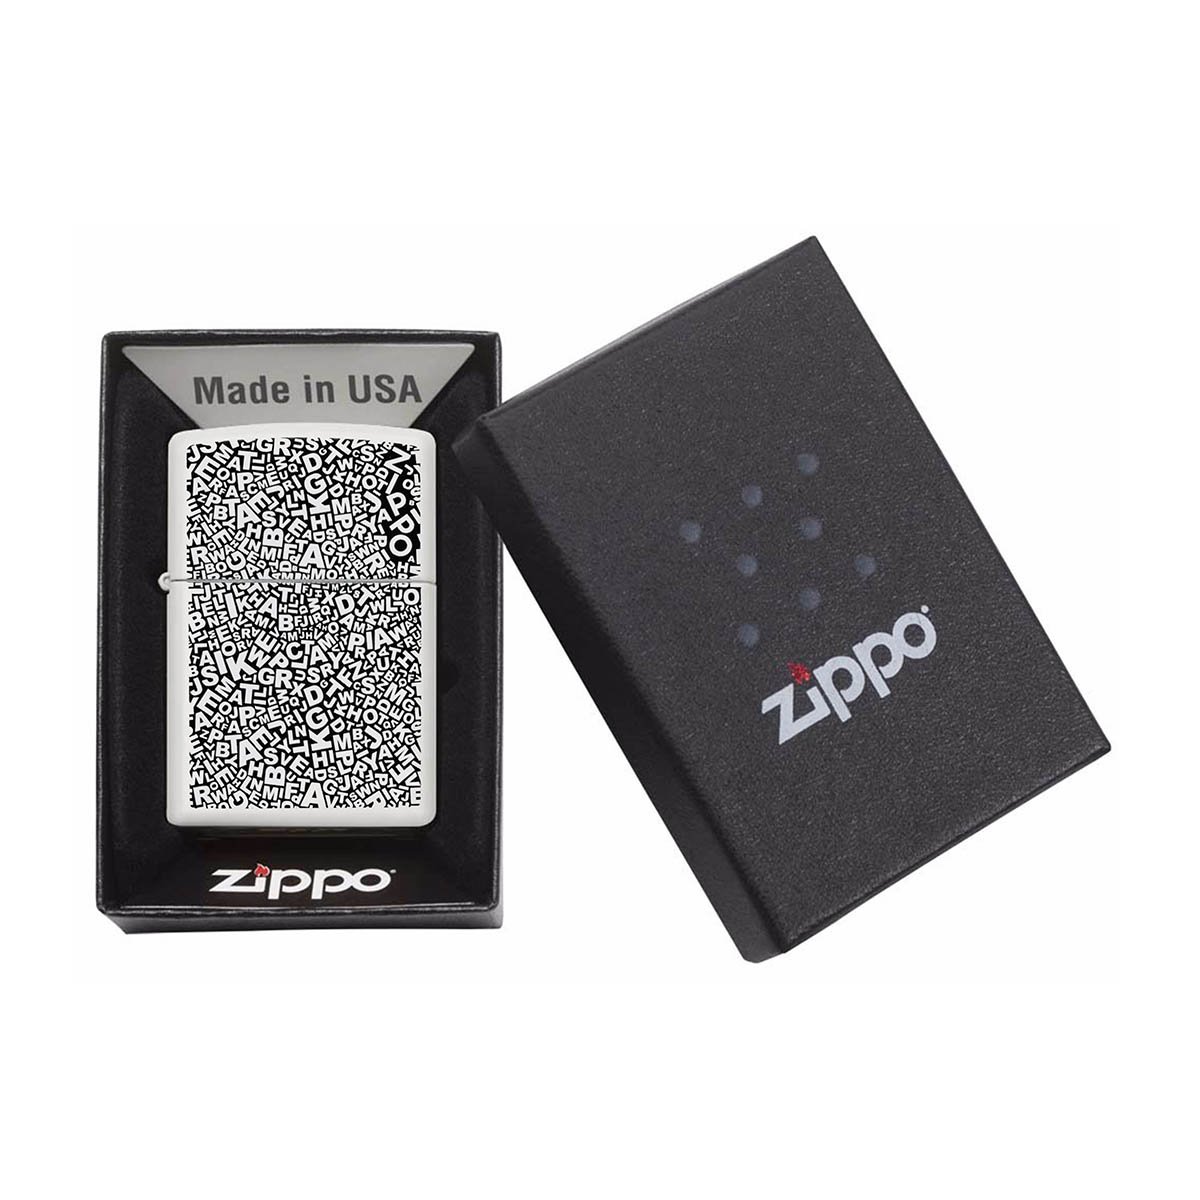 Encendedor Zippo Spring Special Blanco con Letras Negras Modelo Mz49213